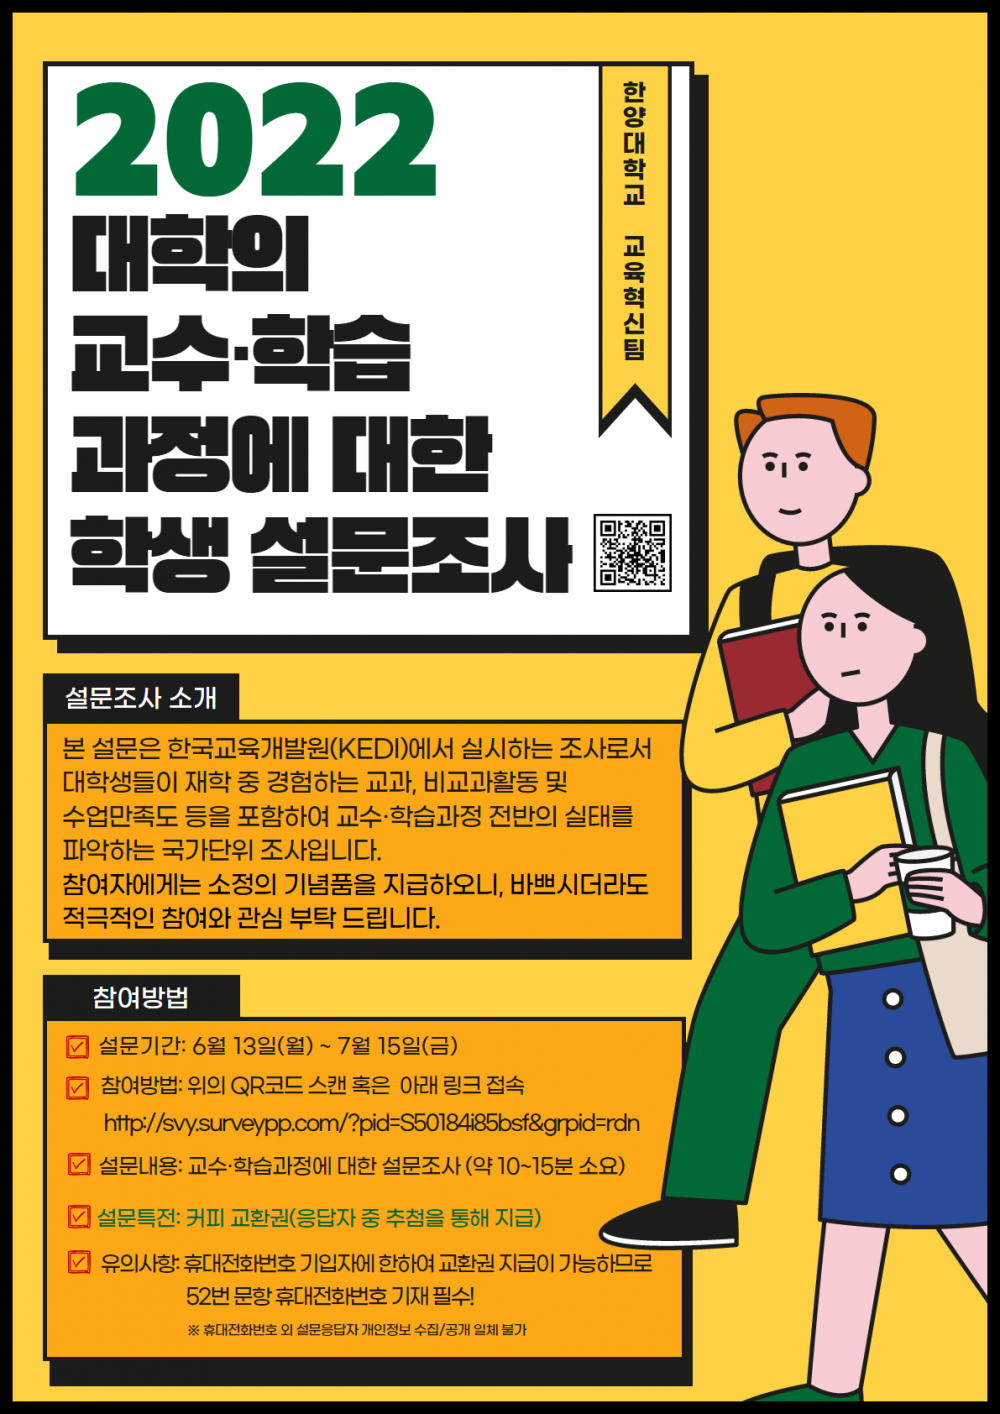 3-2. 2022 대학의 교수학습과정에 관한 설문조사 포스터(학생용)